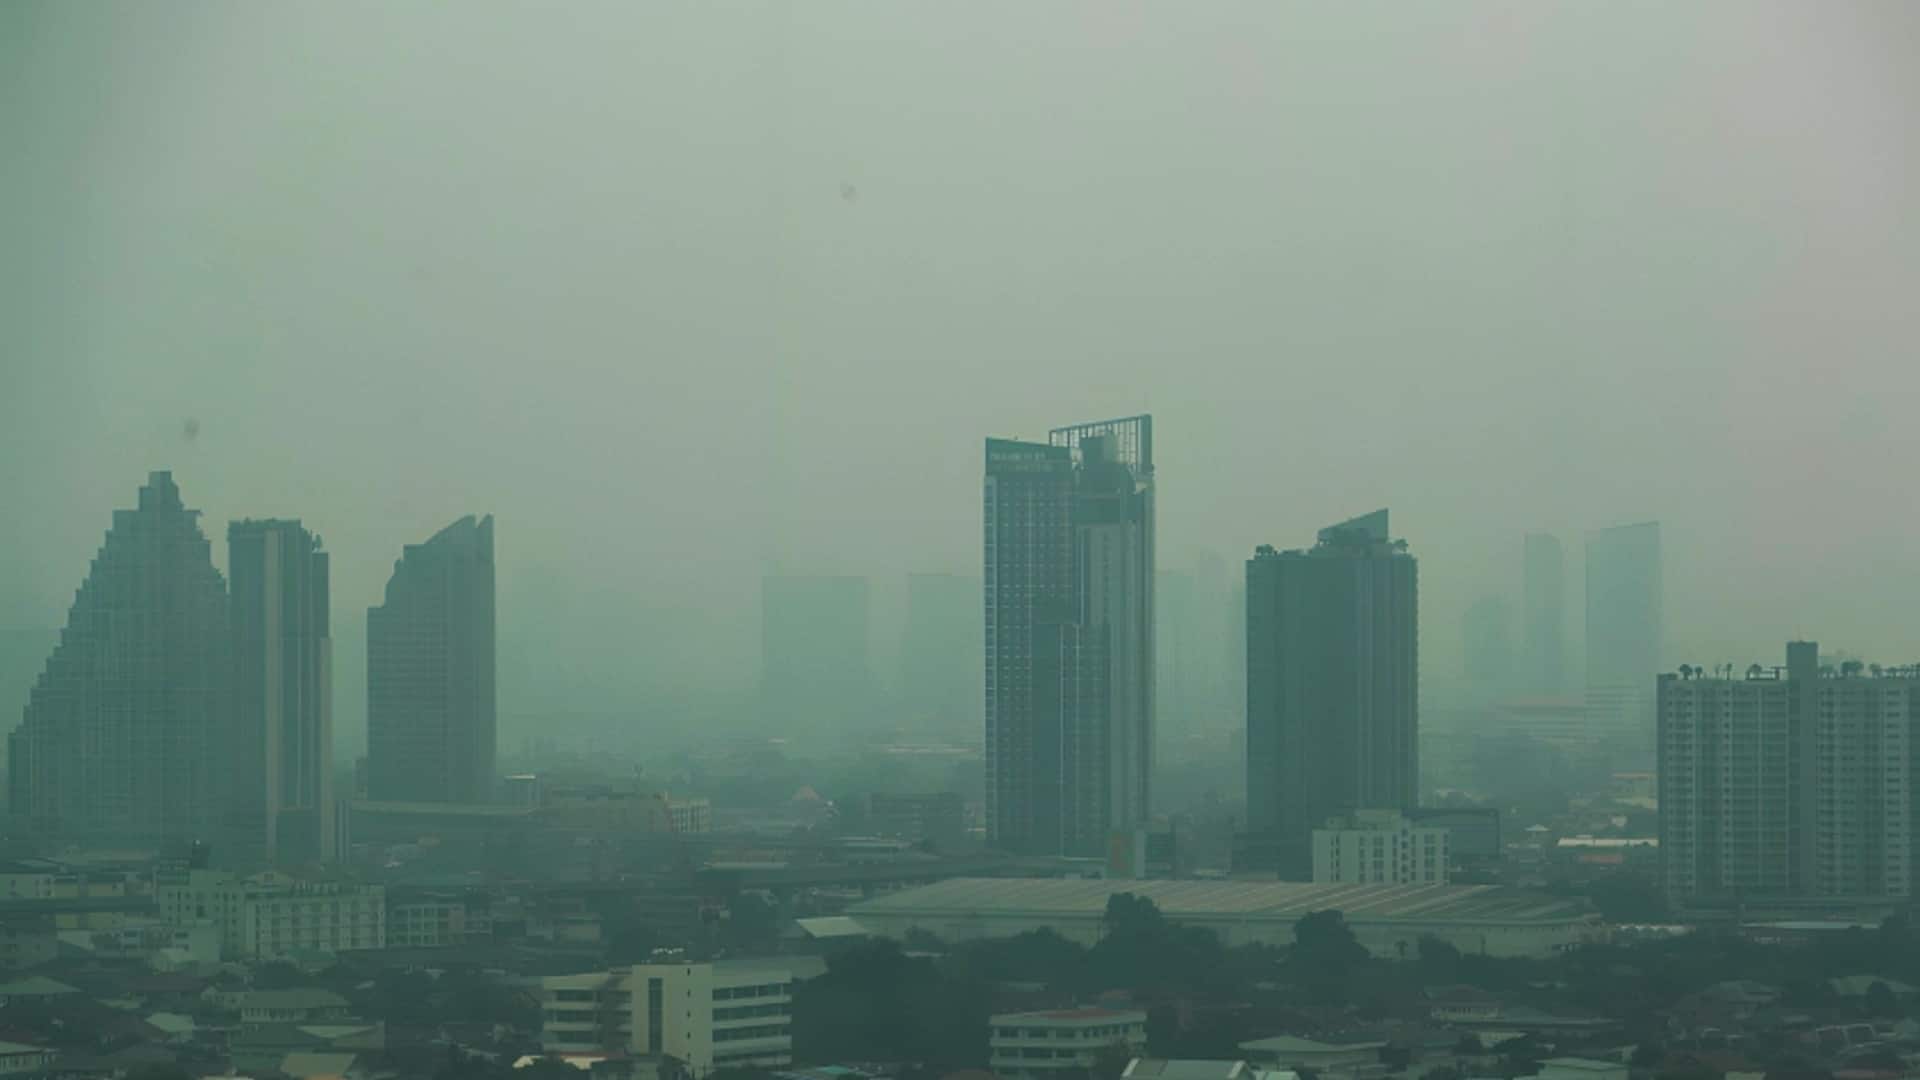 थाईलैंड: बैंकाक में प्रदूषण से सांस लेना मुश्किल, कर्मचारियों को घर से काम करने की सलाह